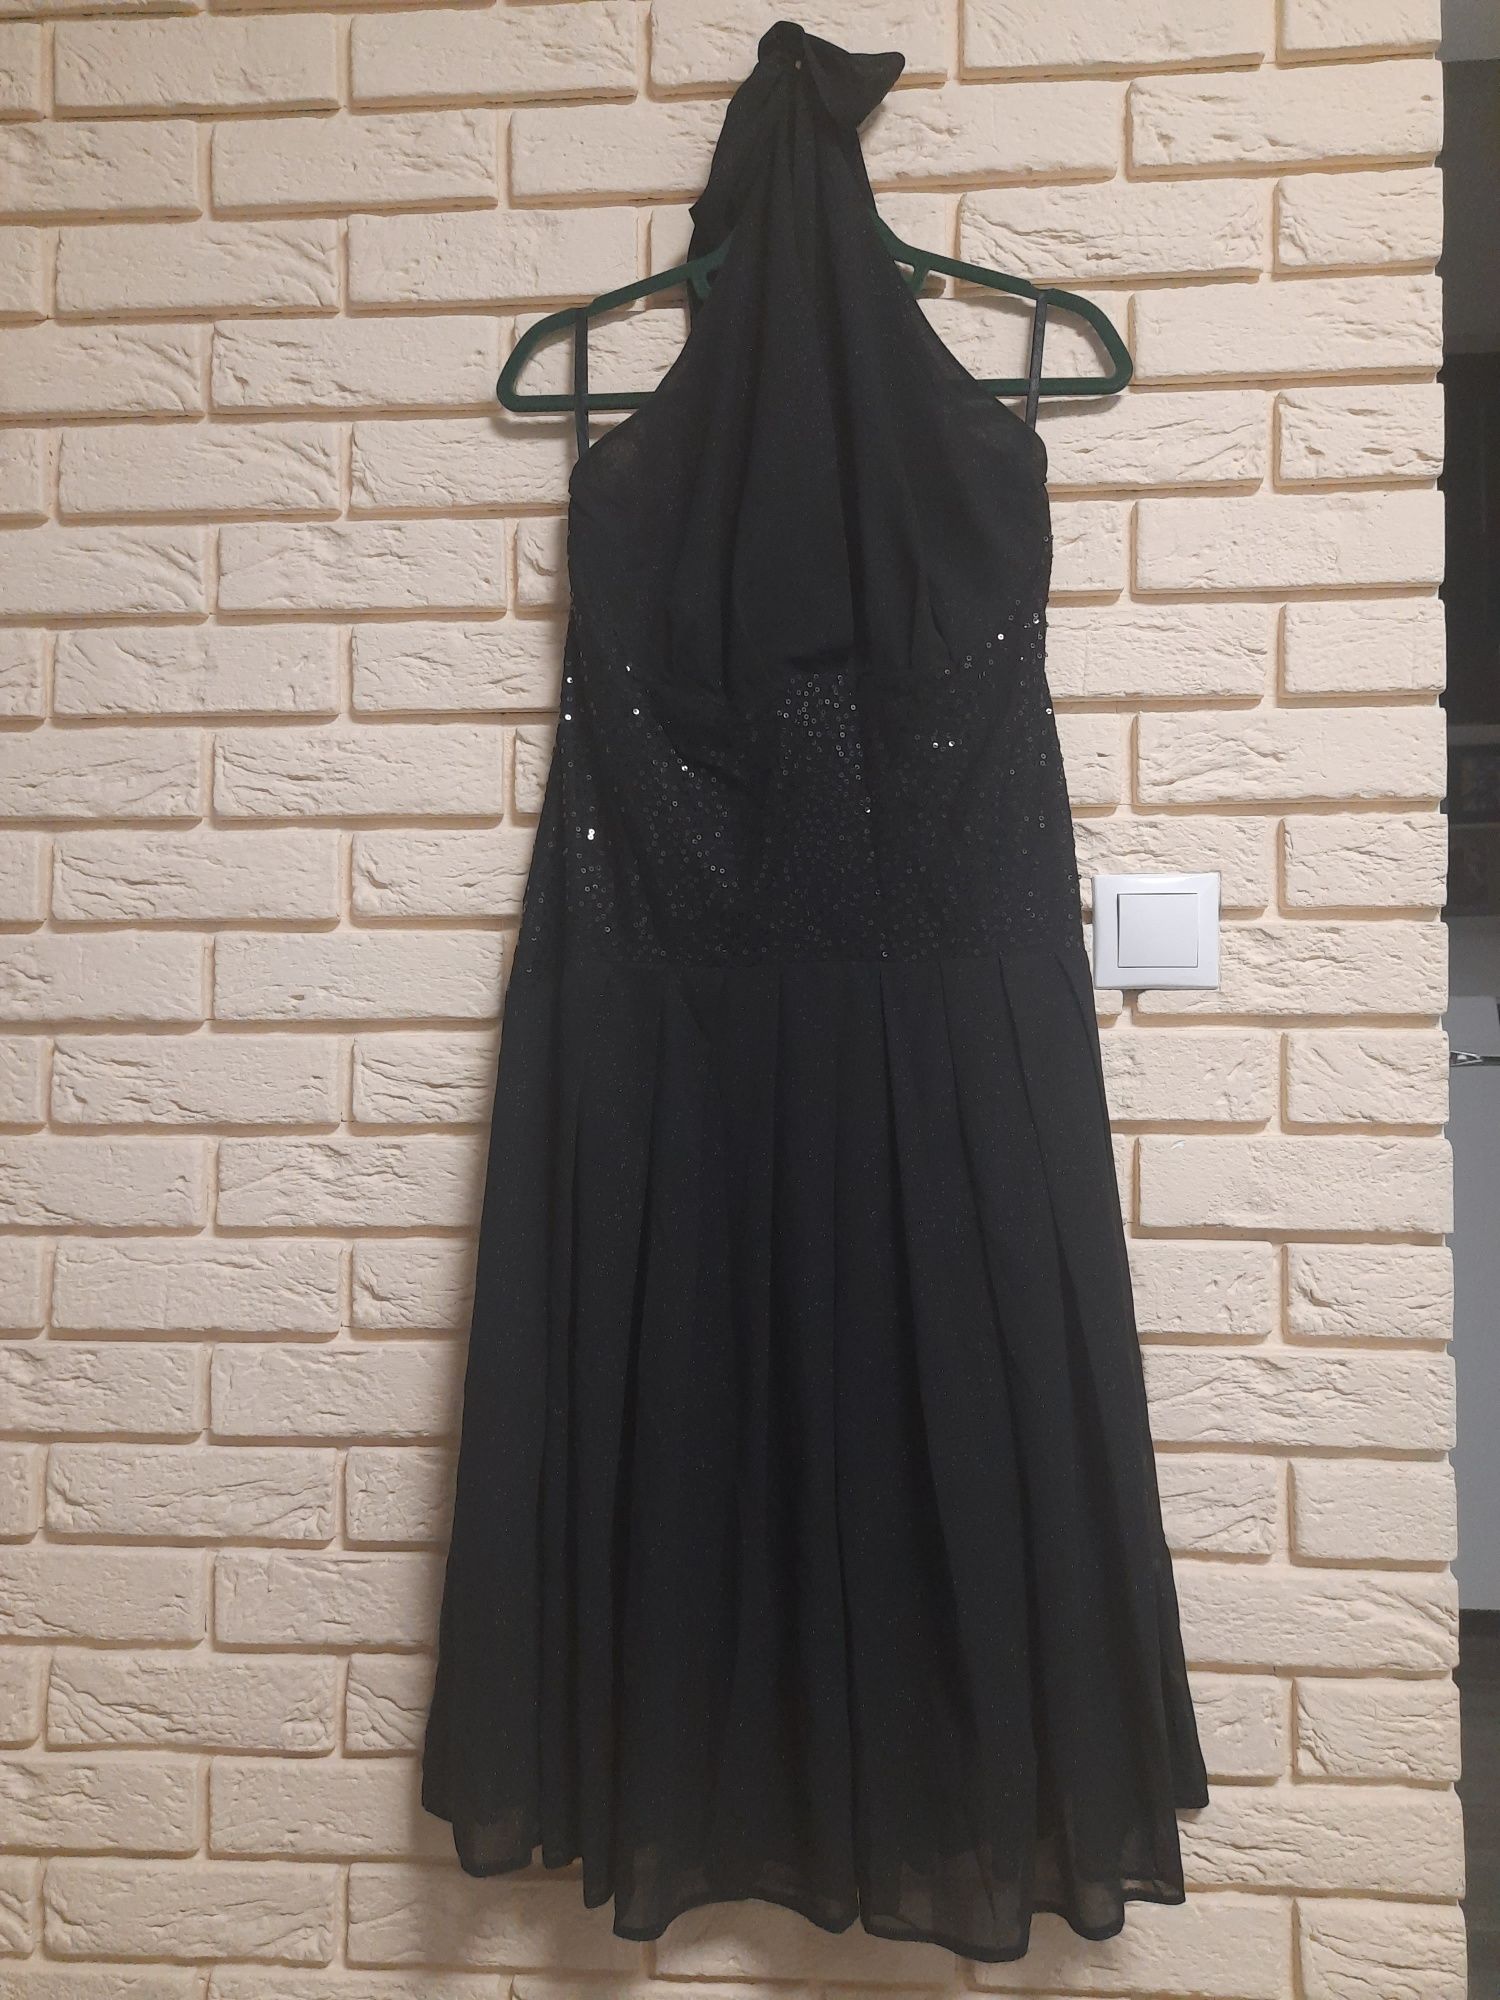 Zupełnie nowa sukienka czarna brokat cekiny wiązana na szyi